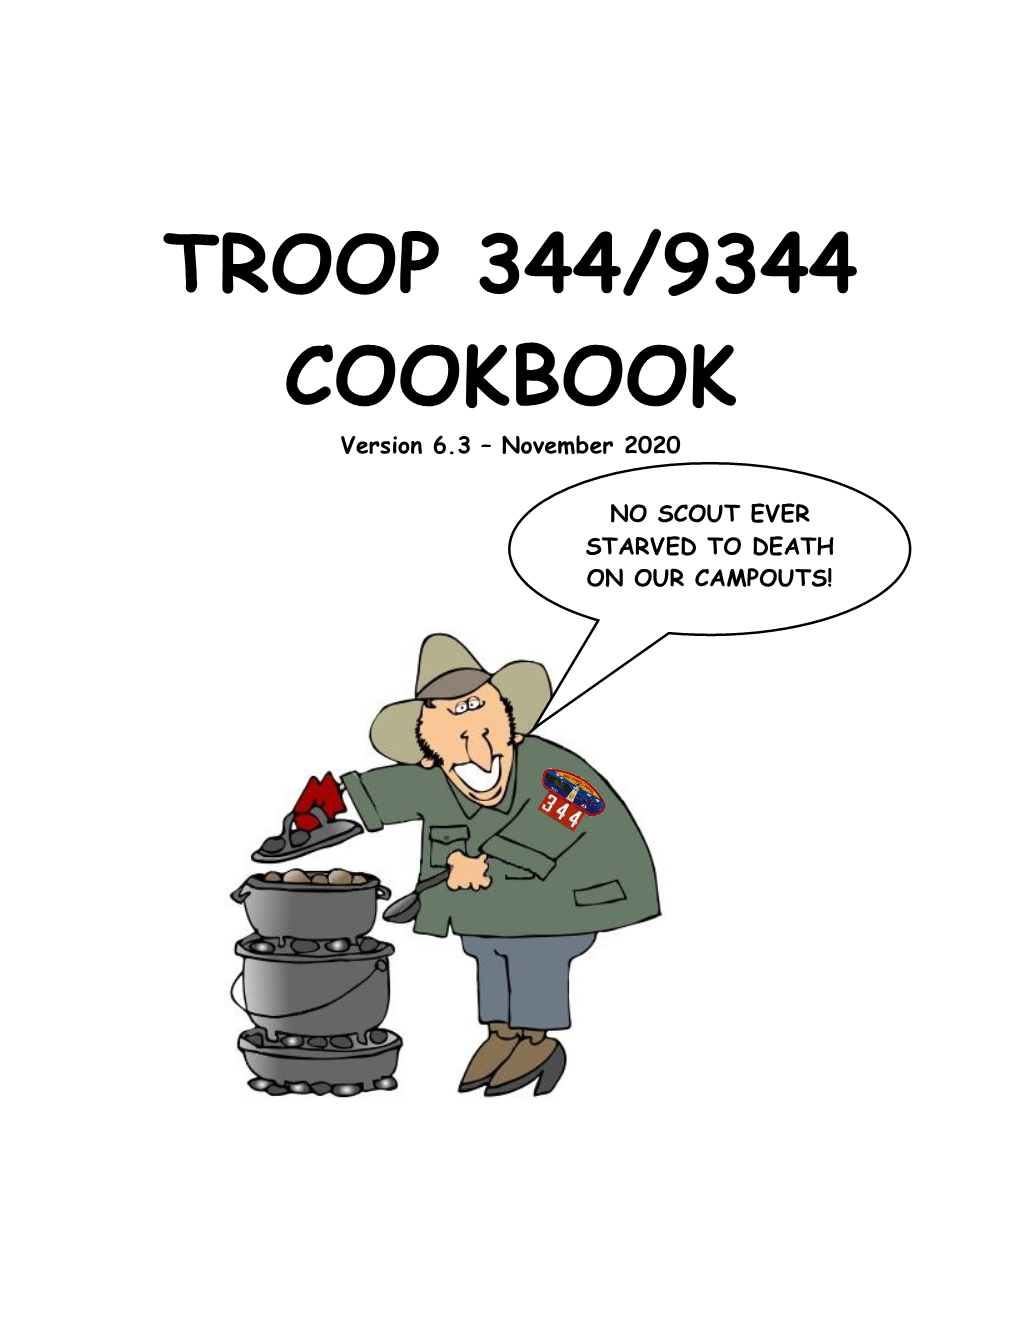 Troop 344/9344 Dutch Oven Cookbook V6.3